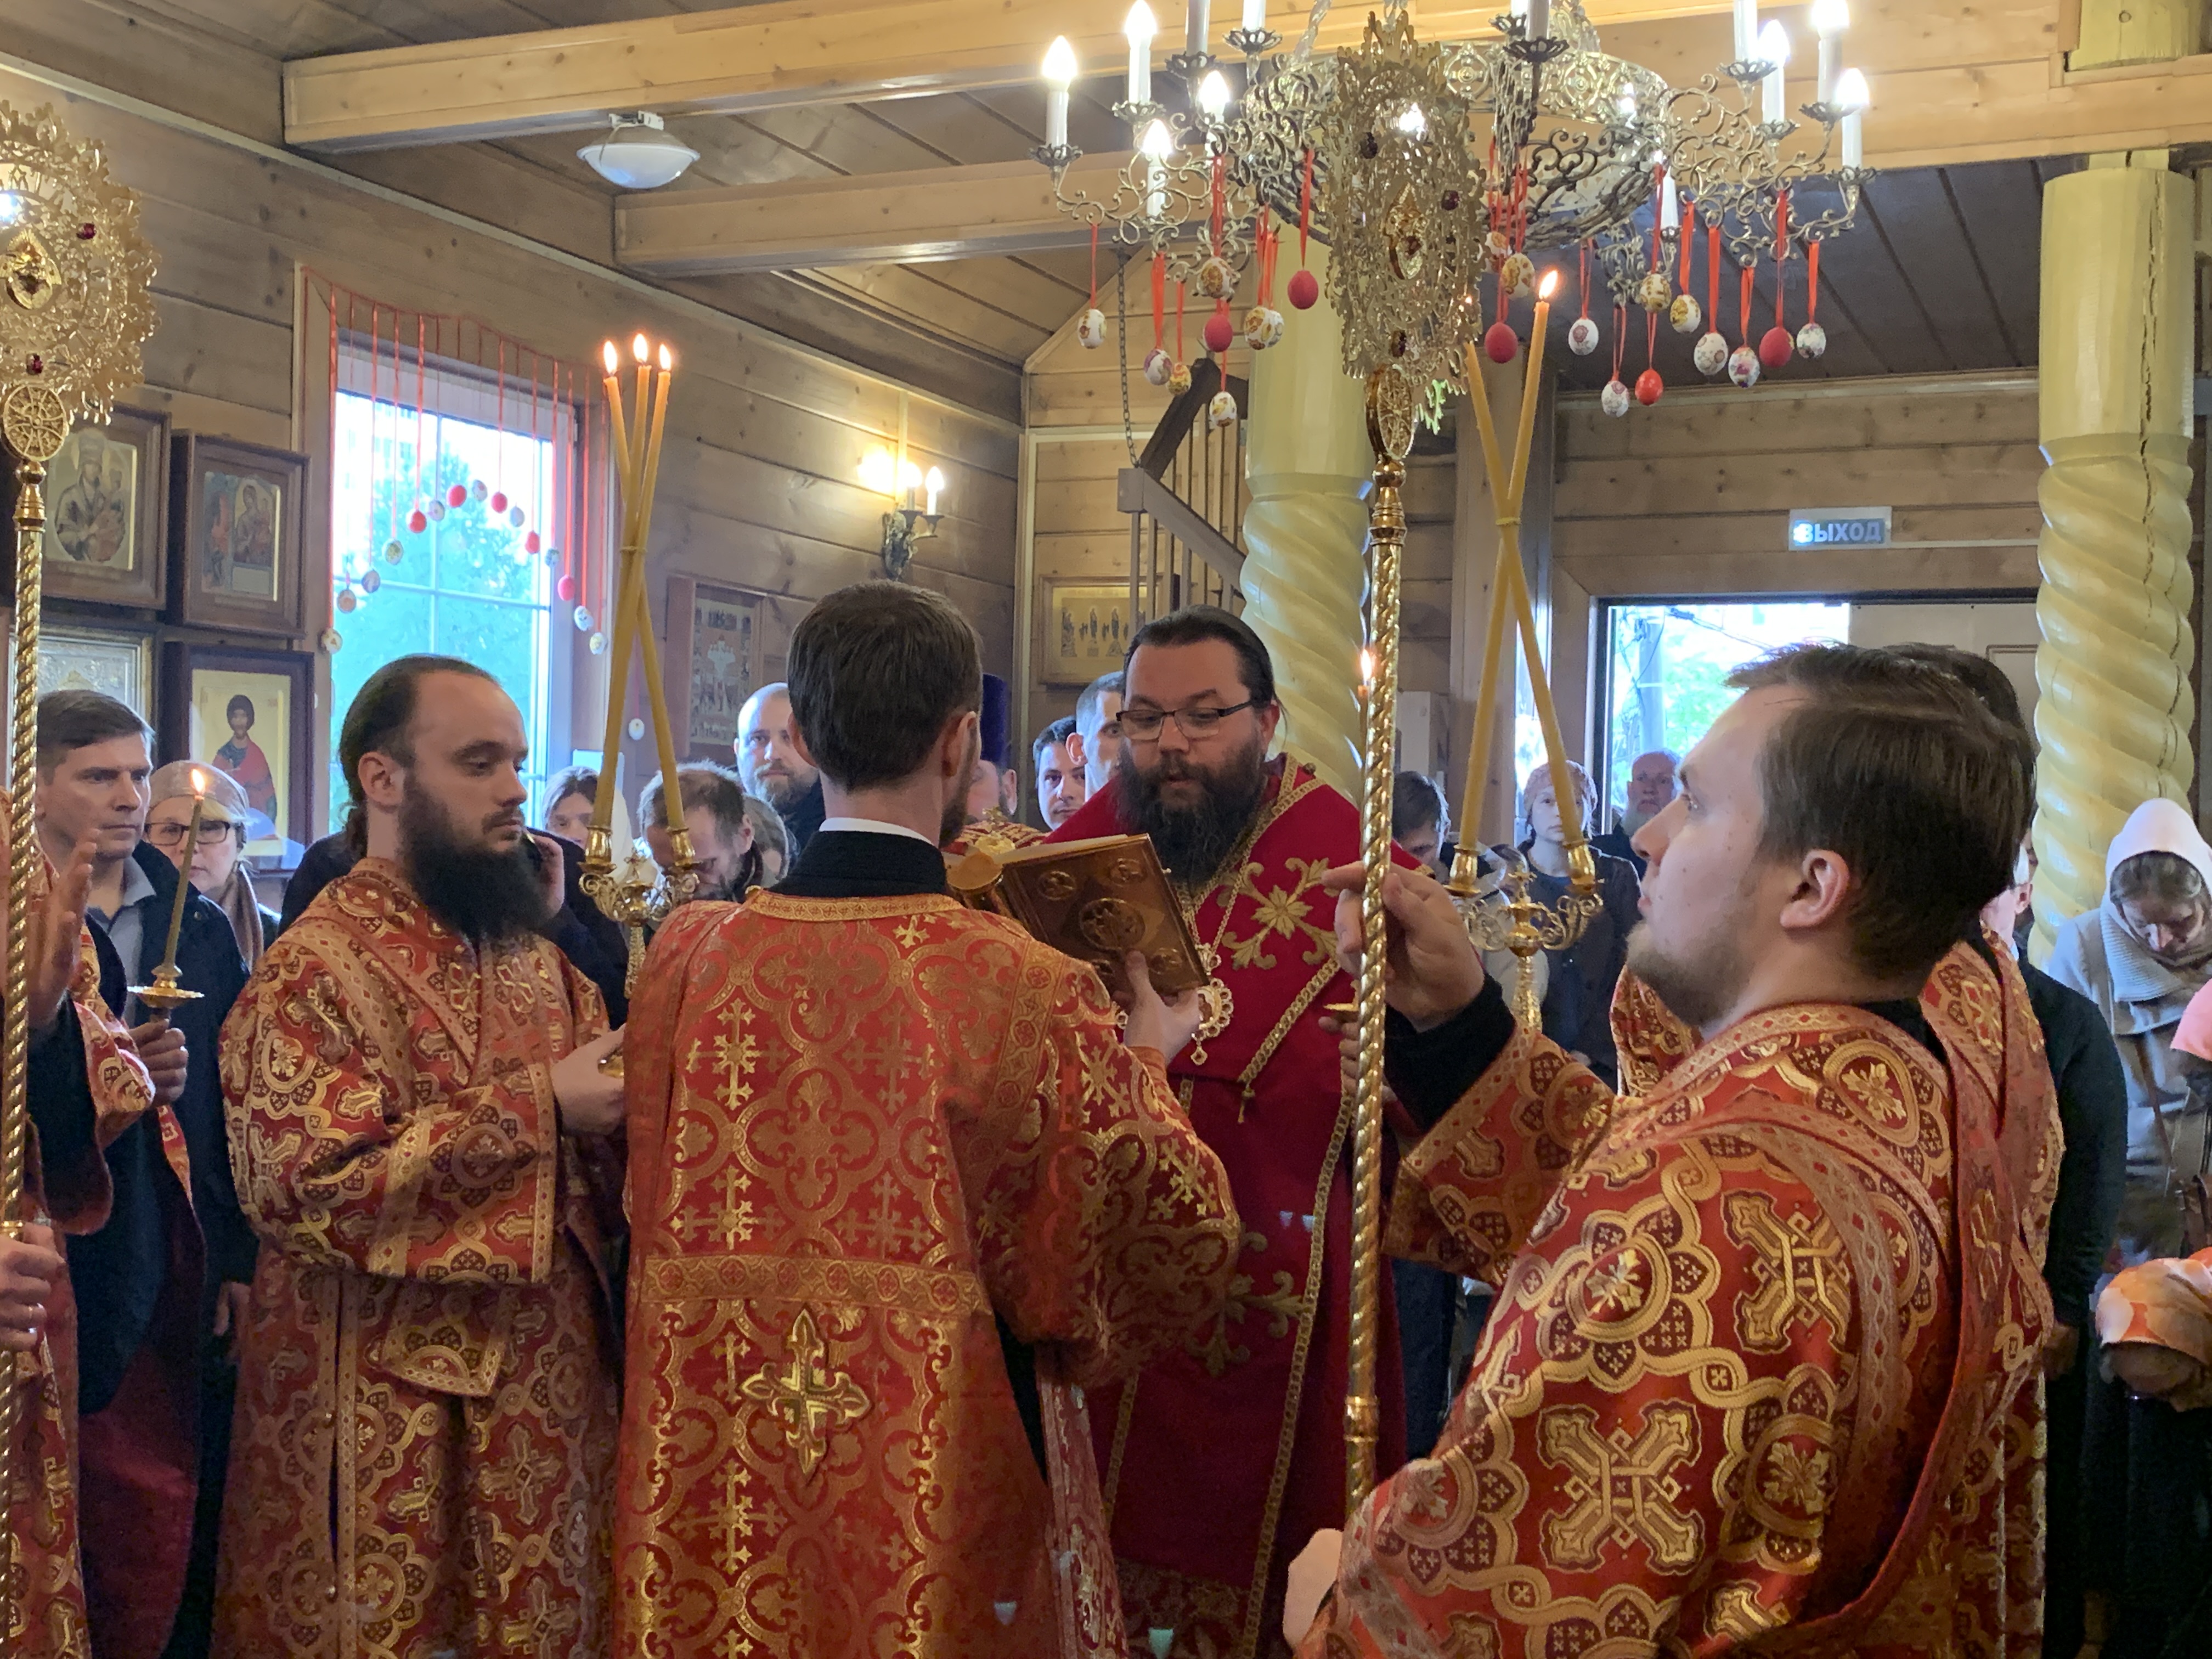 Архиепископ Егорьевский возглавил Всенощное бдение в храме святых Жен-Мироносиц